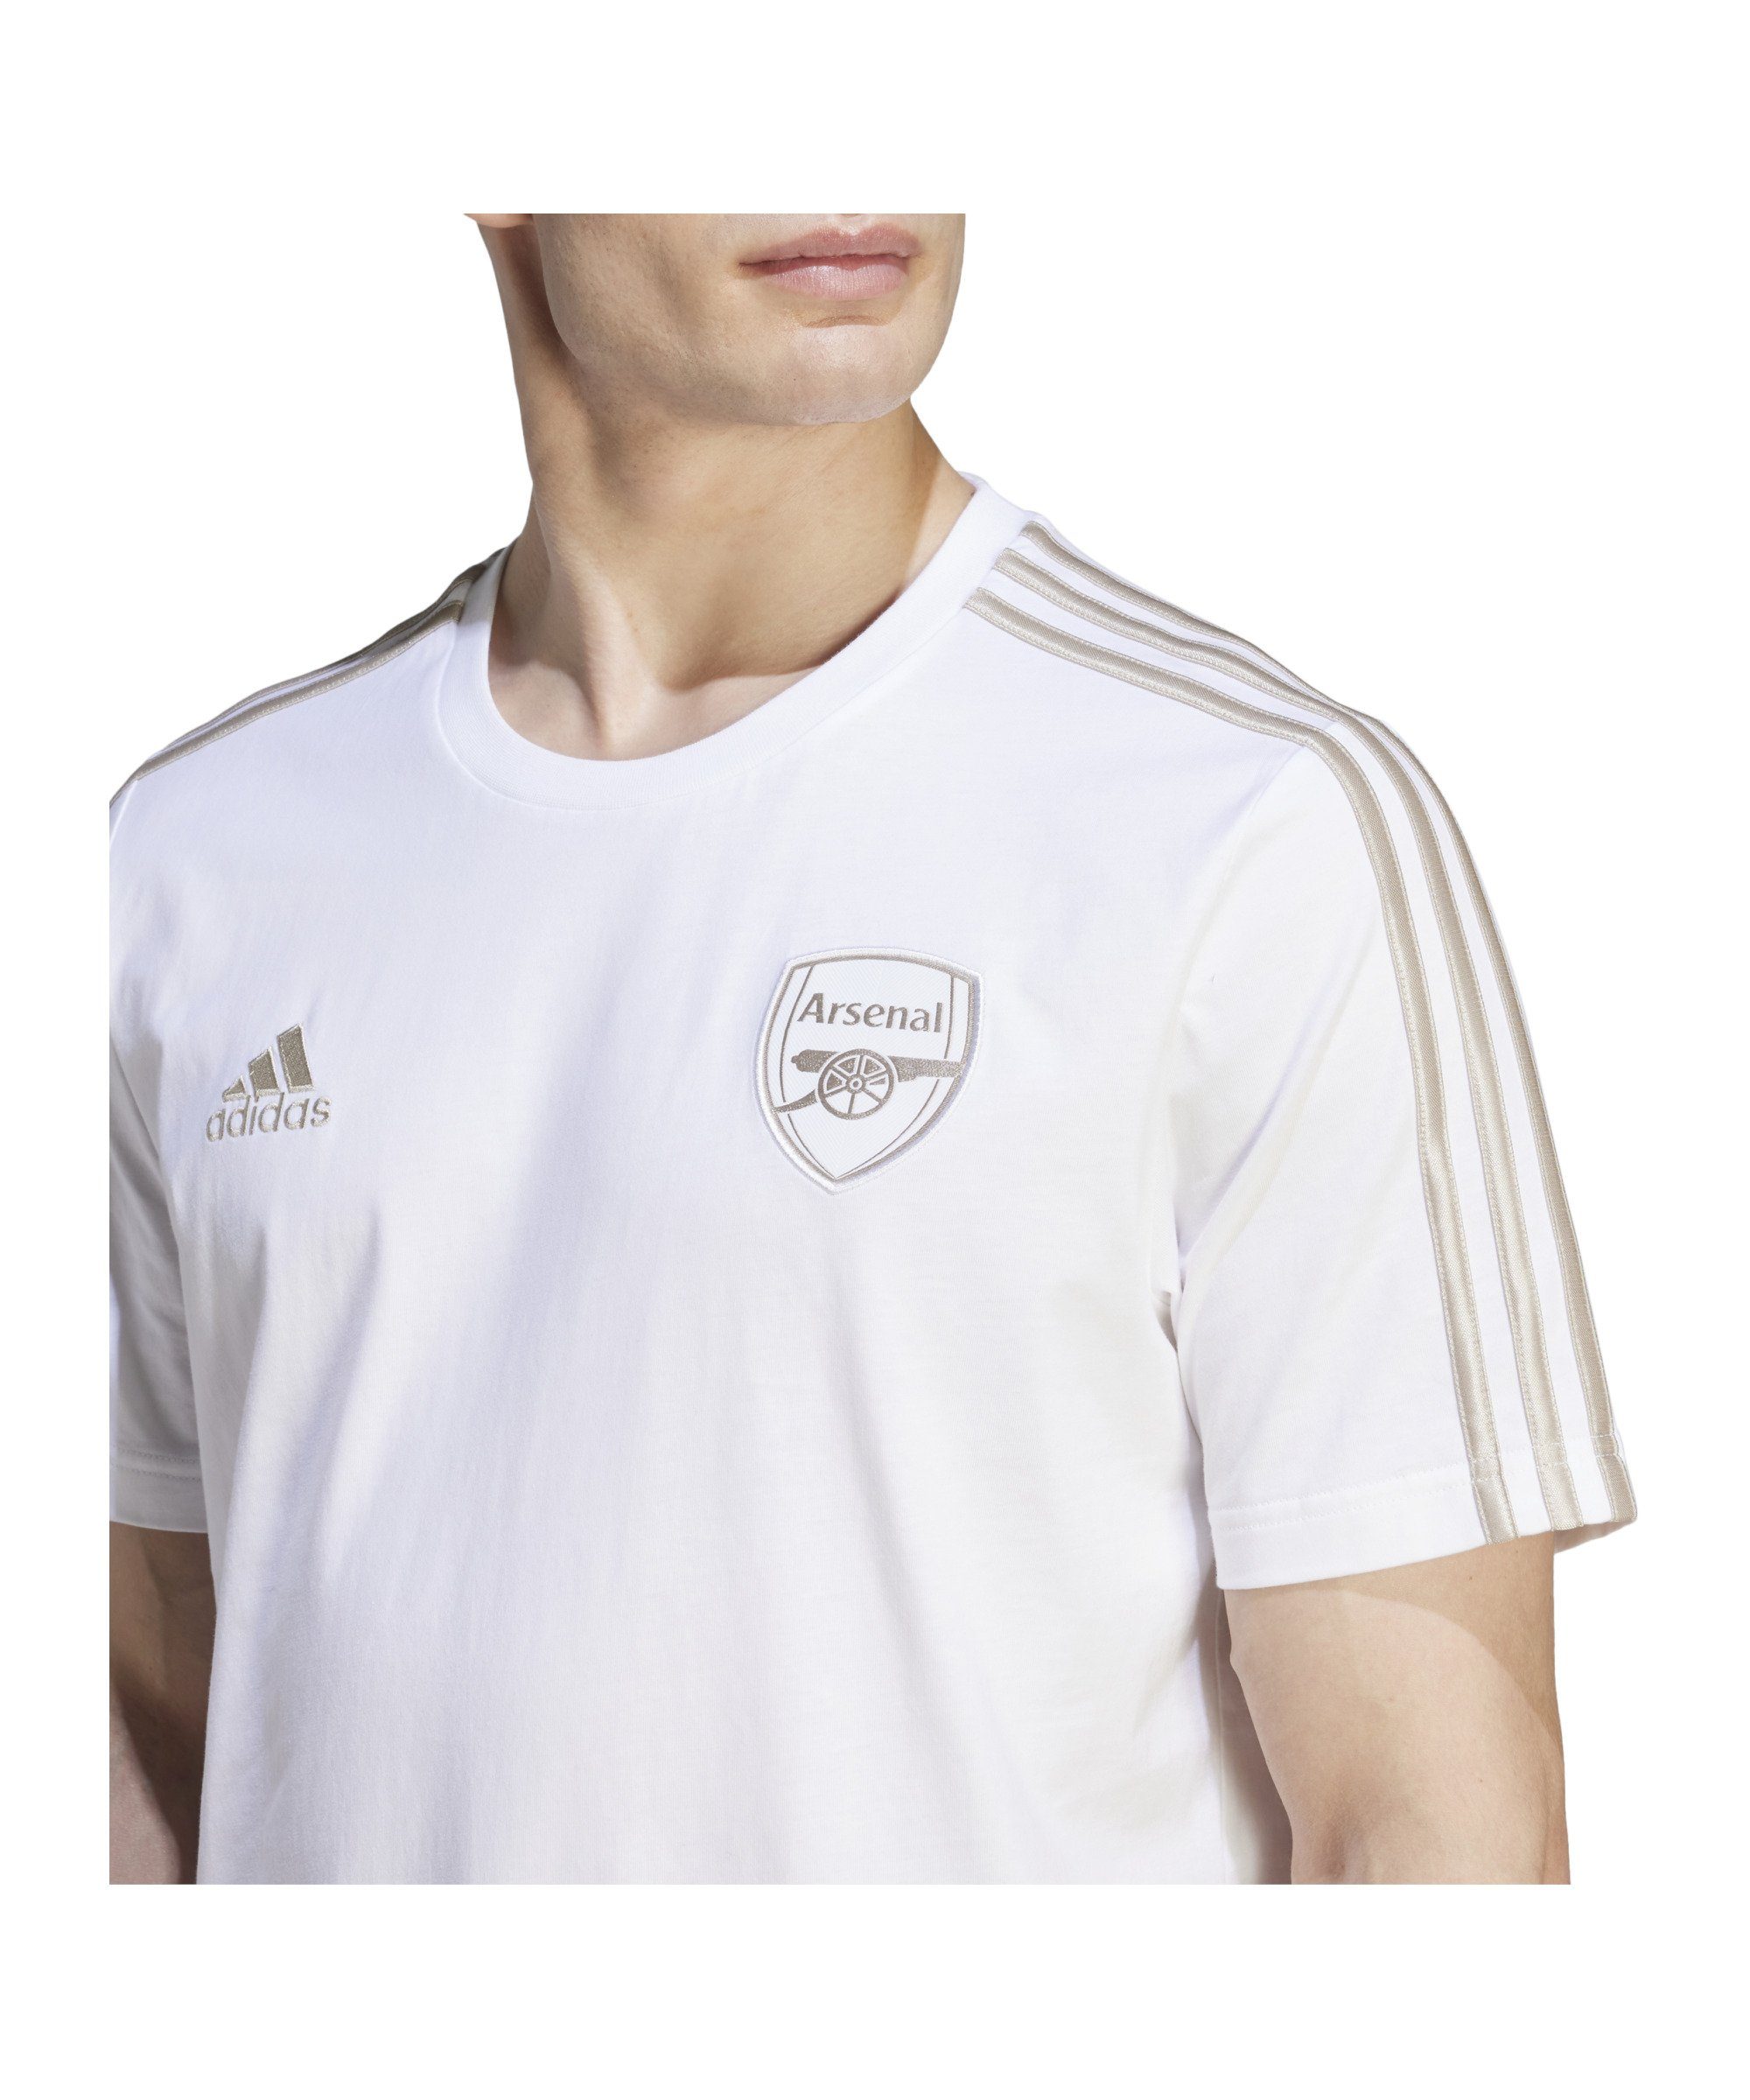 default FC Performance London Arsenal T-Shirt weiss DNA T-Shirt adidas